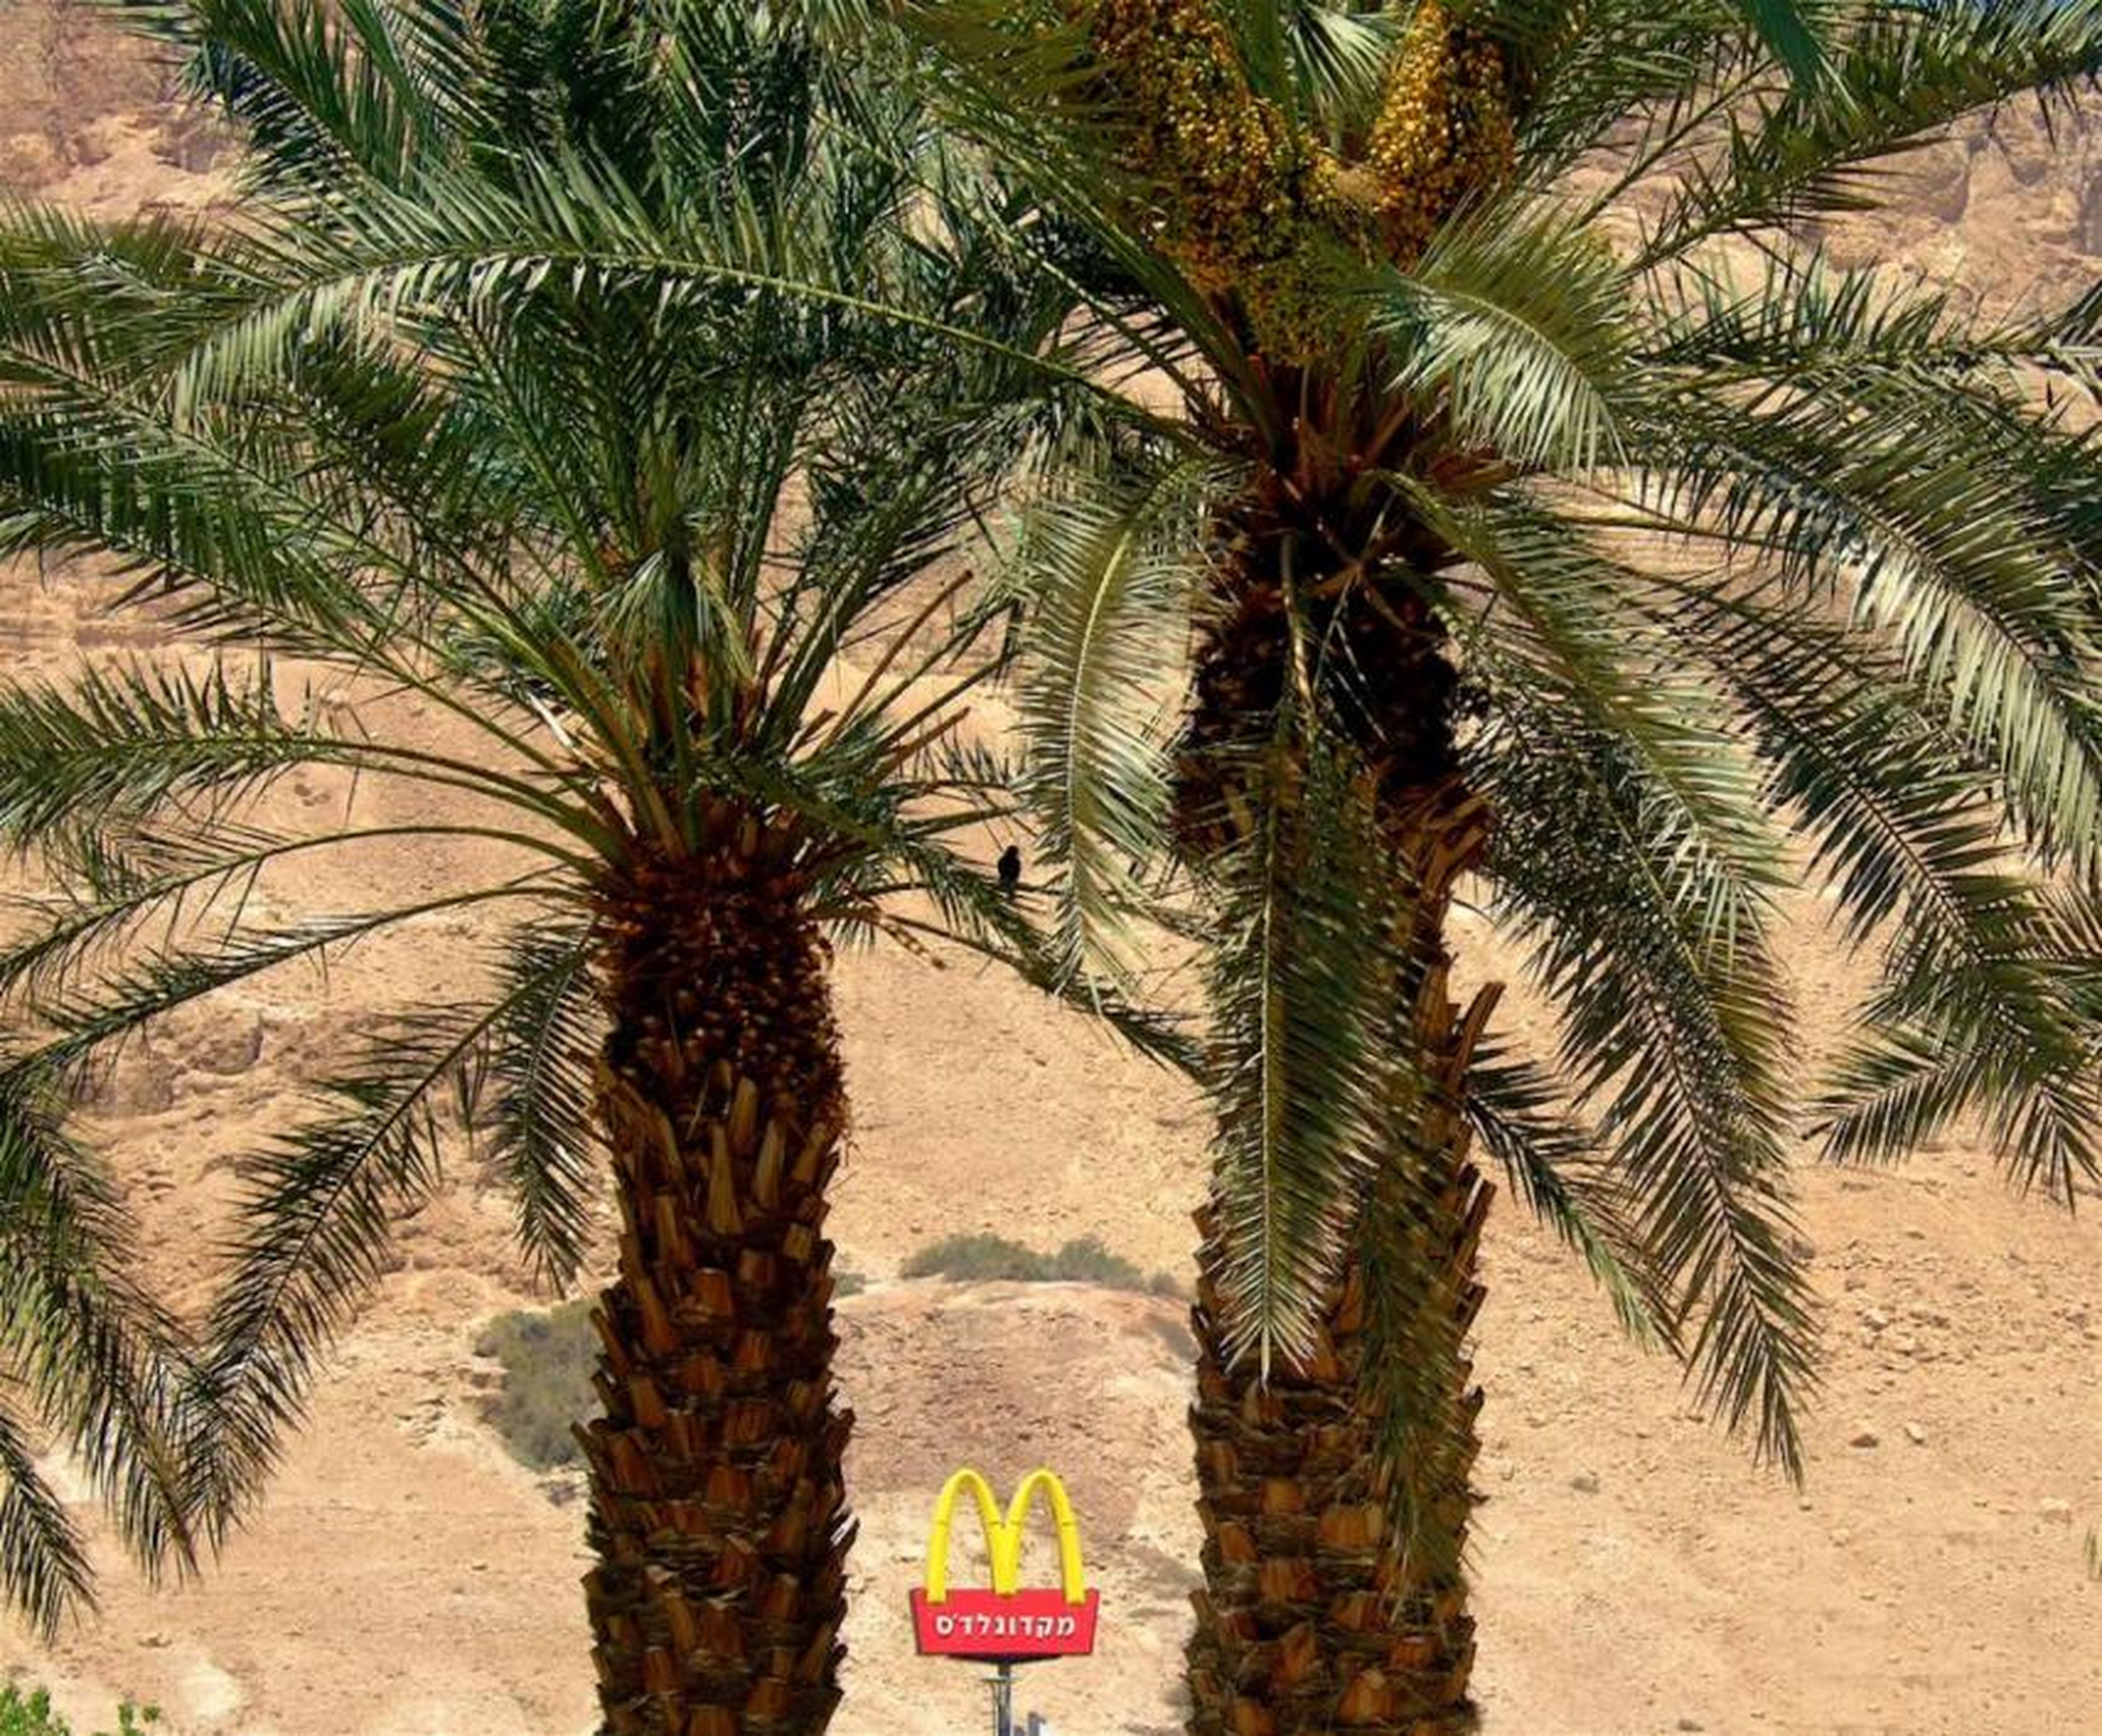 Israel tiene un McDonald's en medio del desierto de Negev. A pesar de estar en el desierto, recibe bastante tráfico turístico